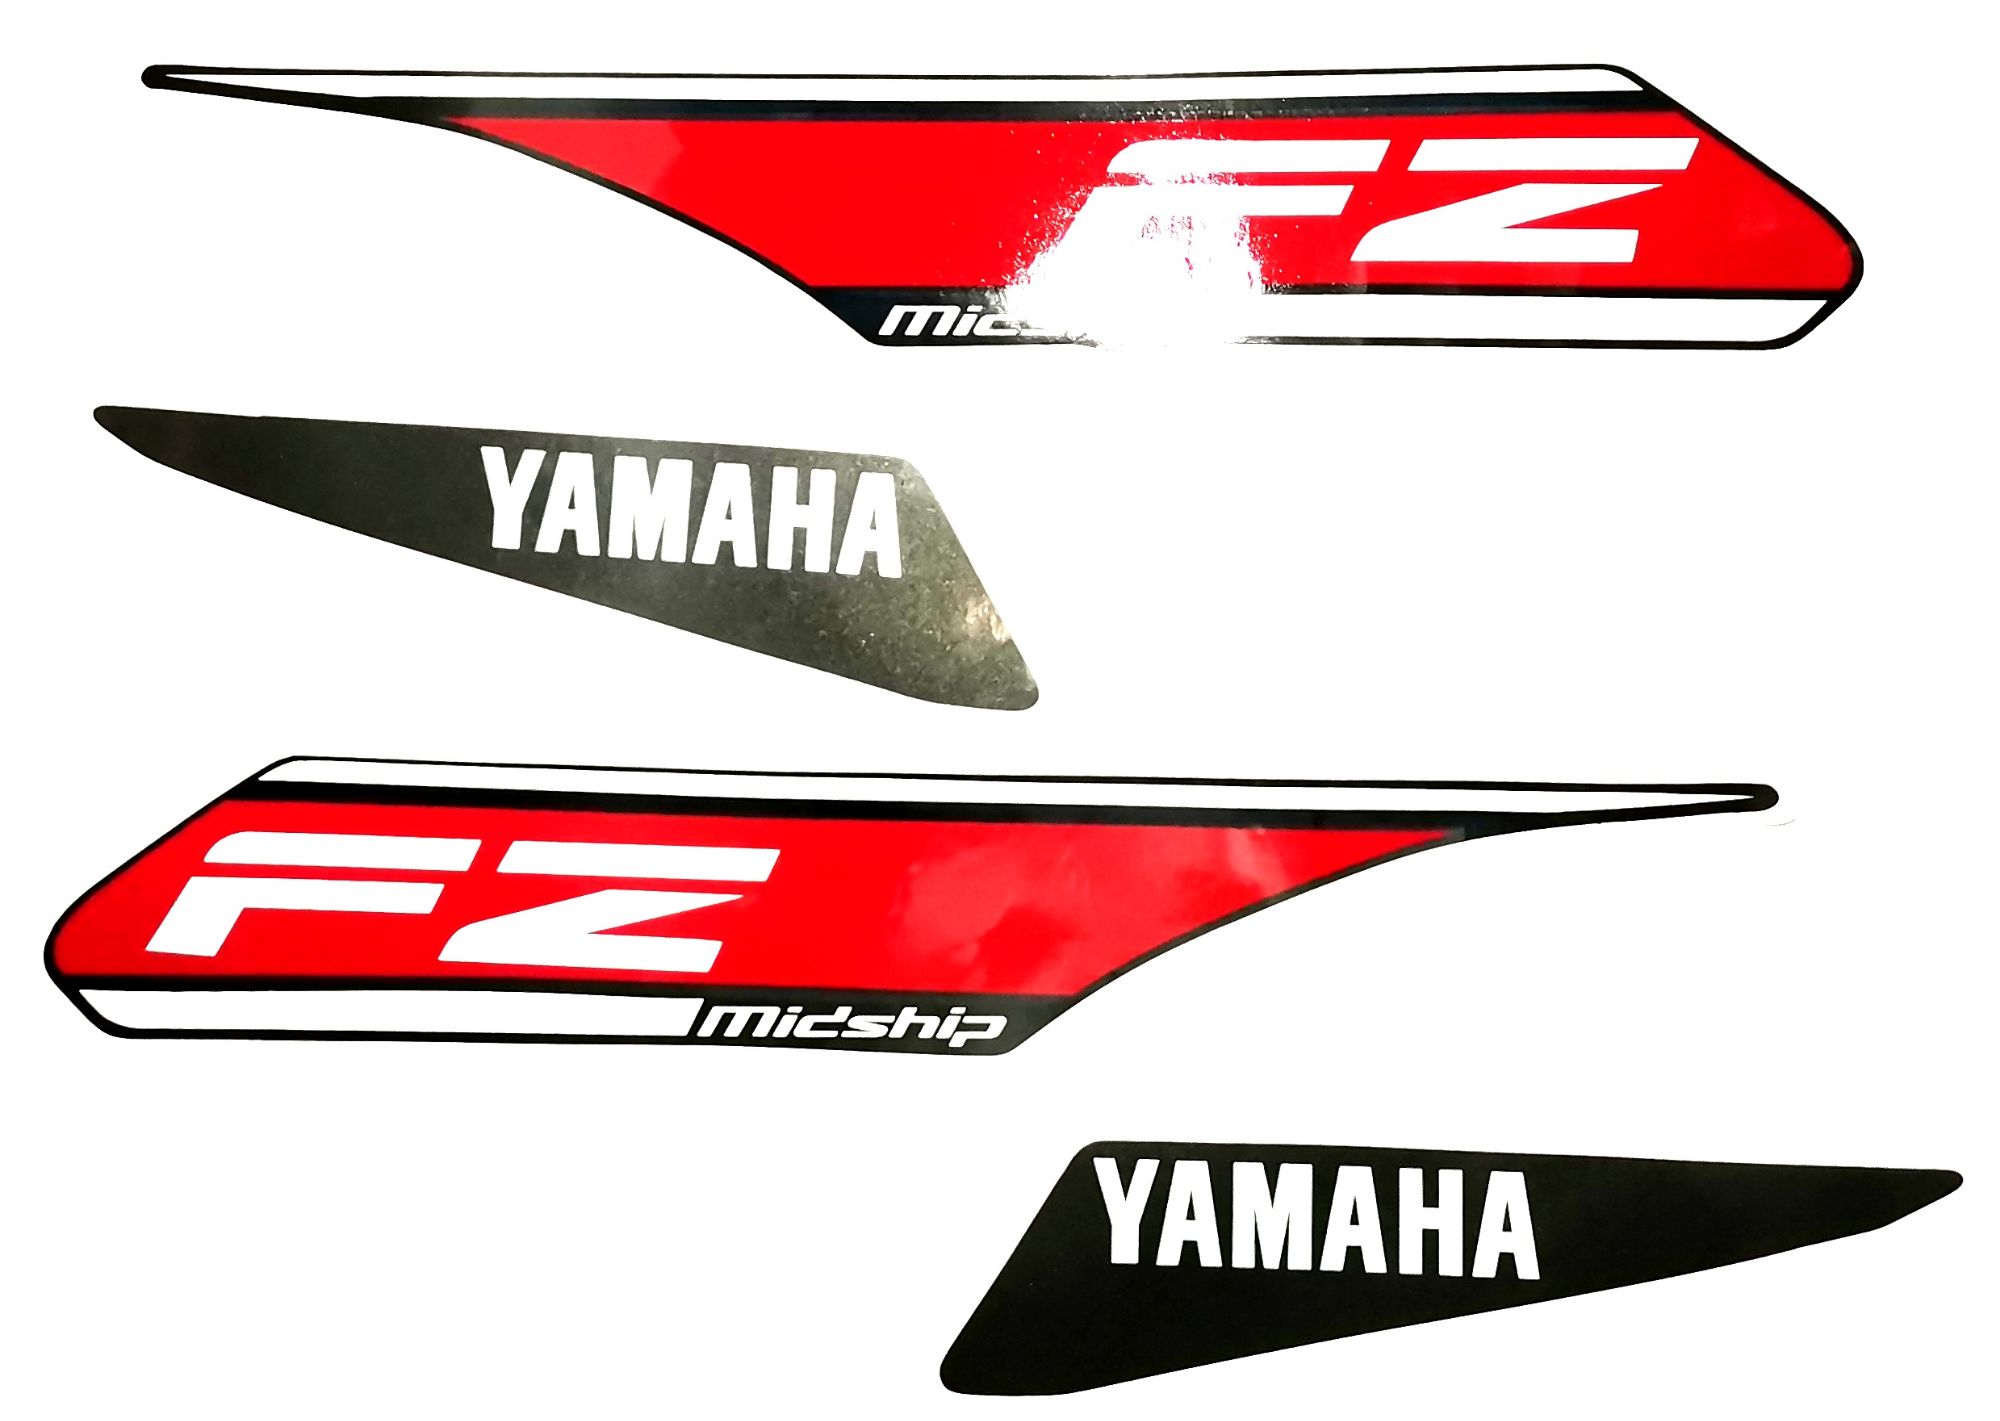 Yamaha Fz S Fi Die Cut Stickers Decals - DecalsHouse